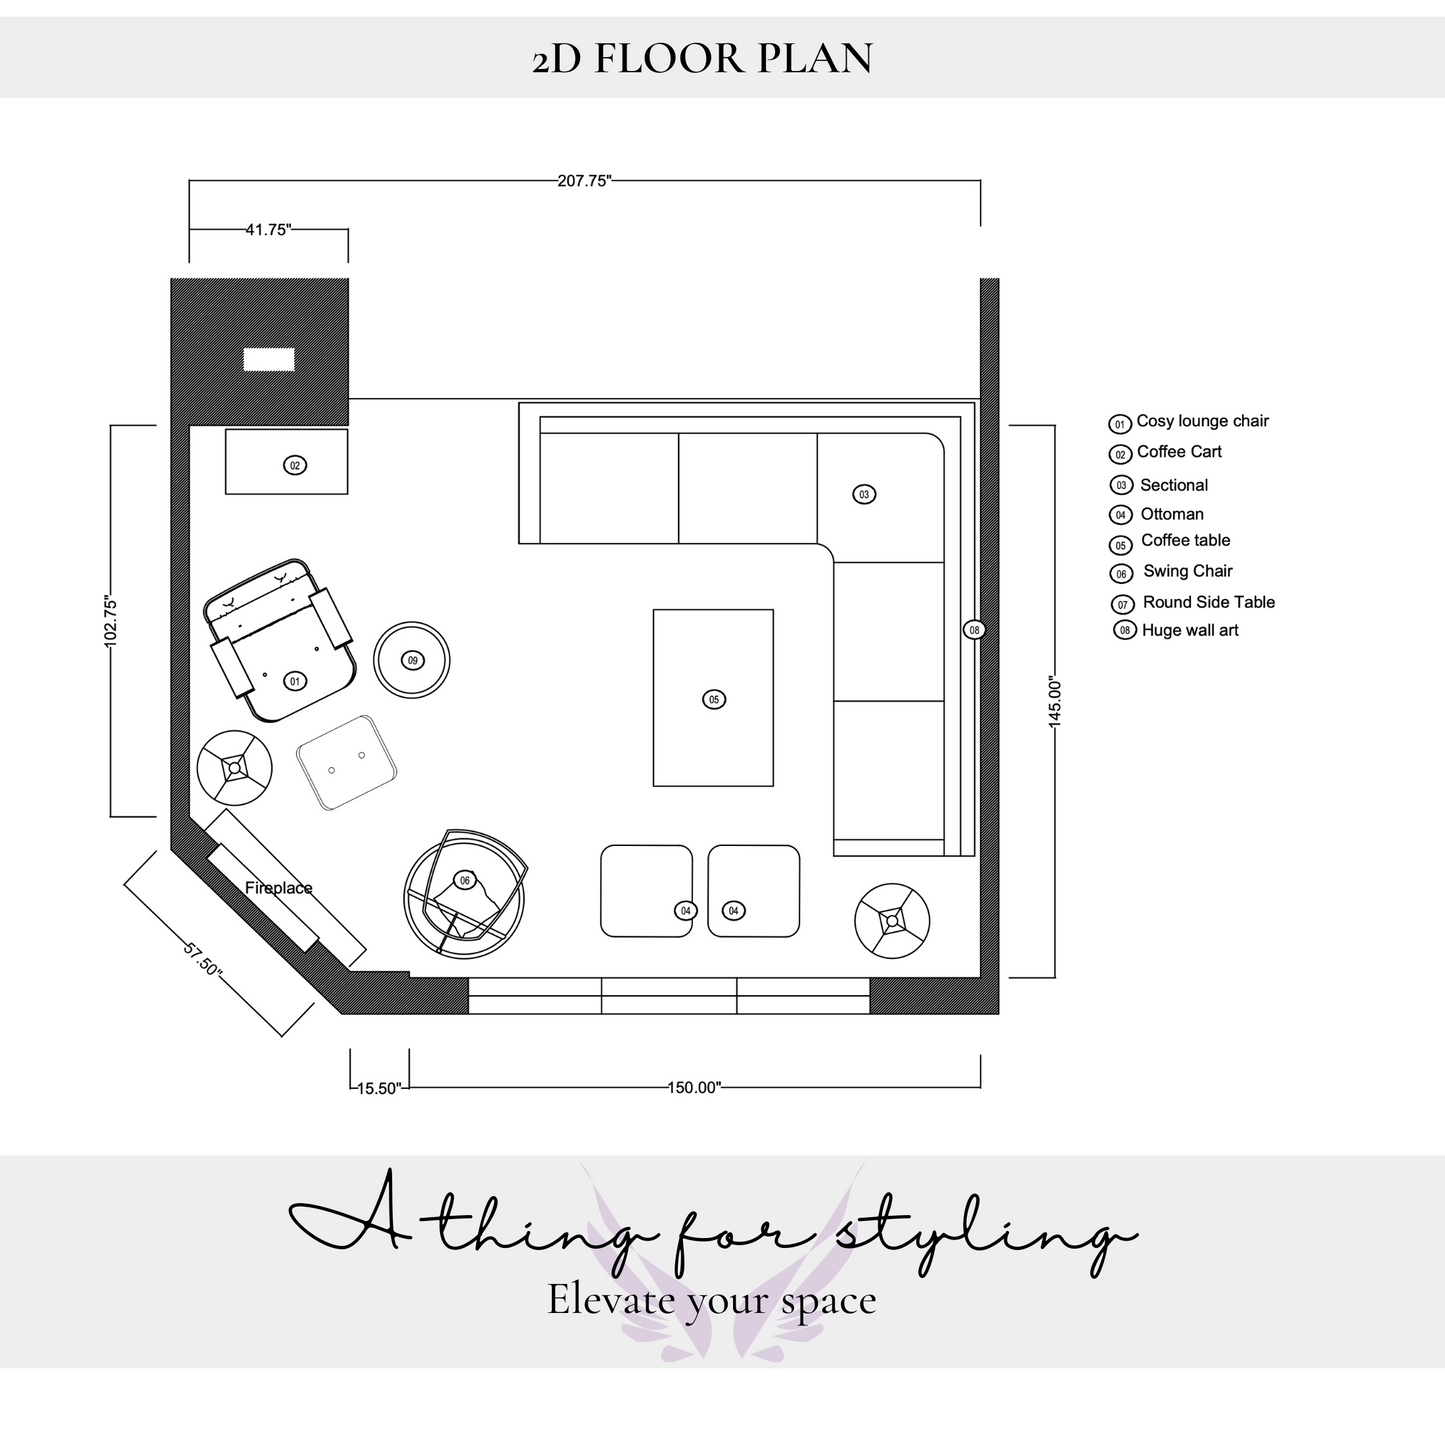 2D Room Floor plan - 1 Room Space Planning.